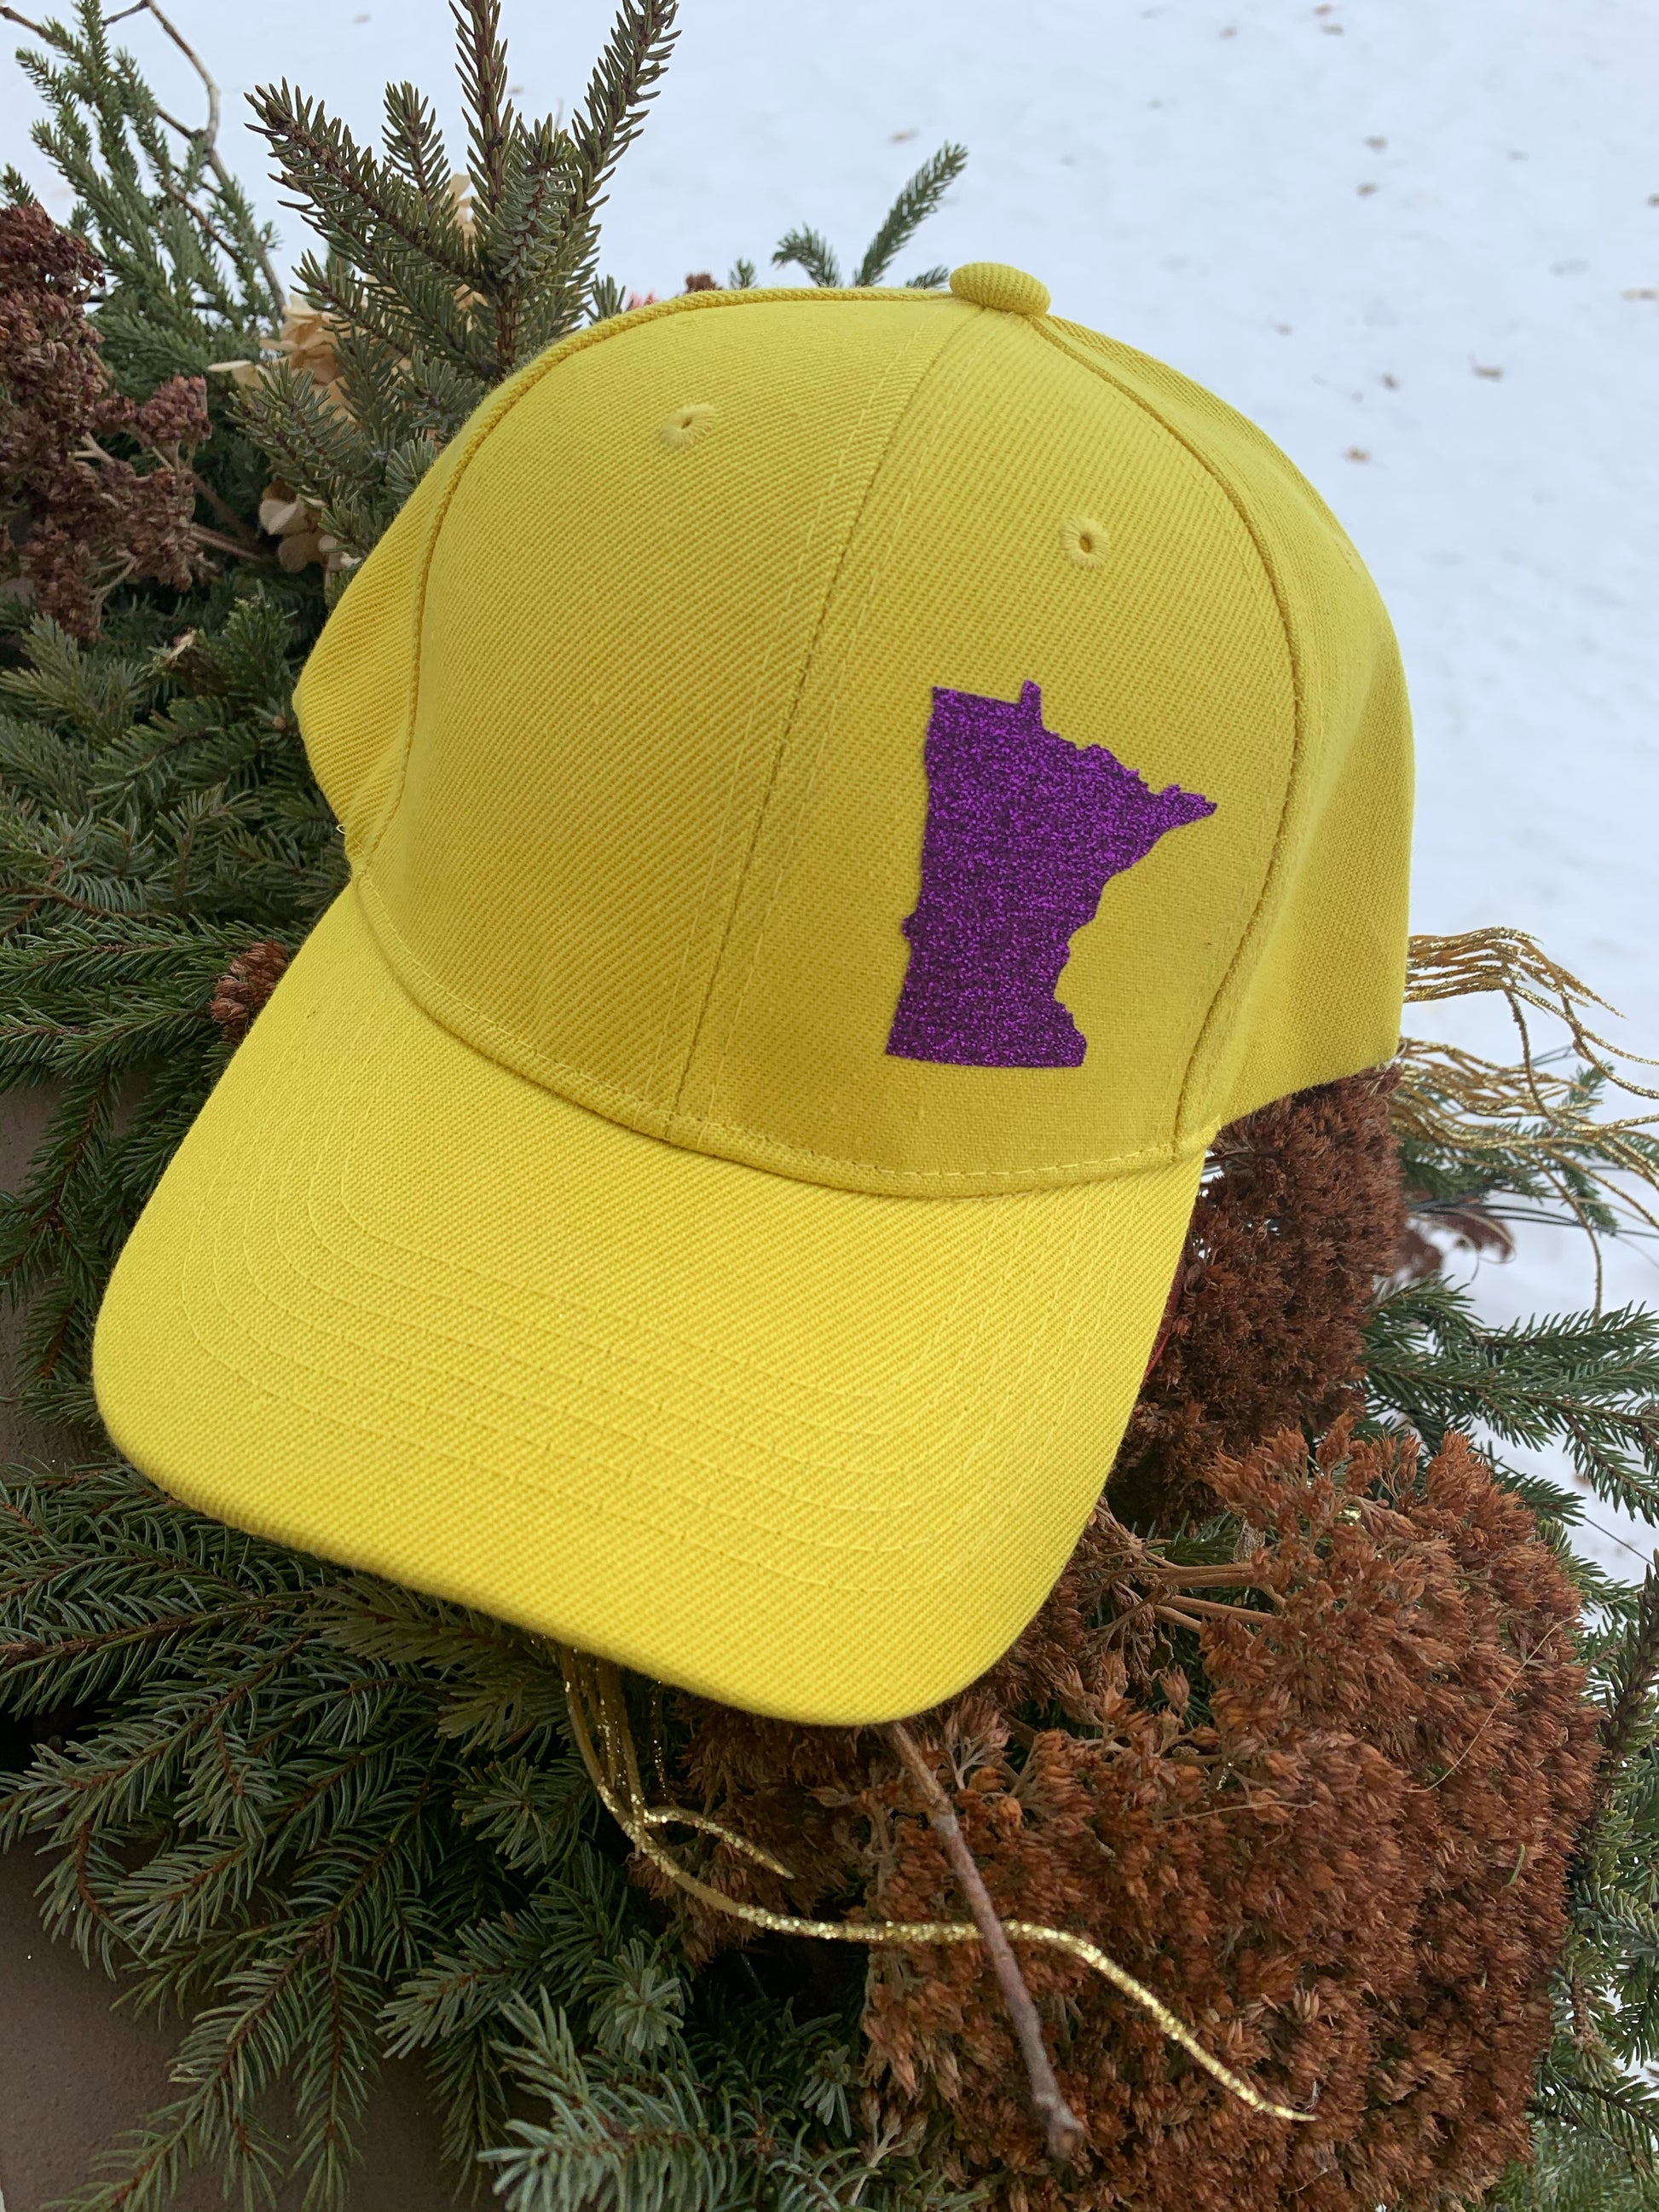 Hat { Vikings } Minnesota • Adjustable snapback • Gold with purple